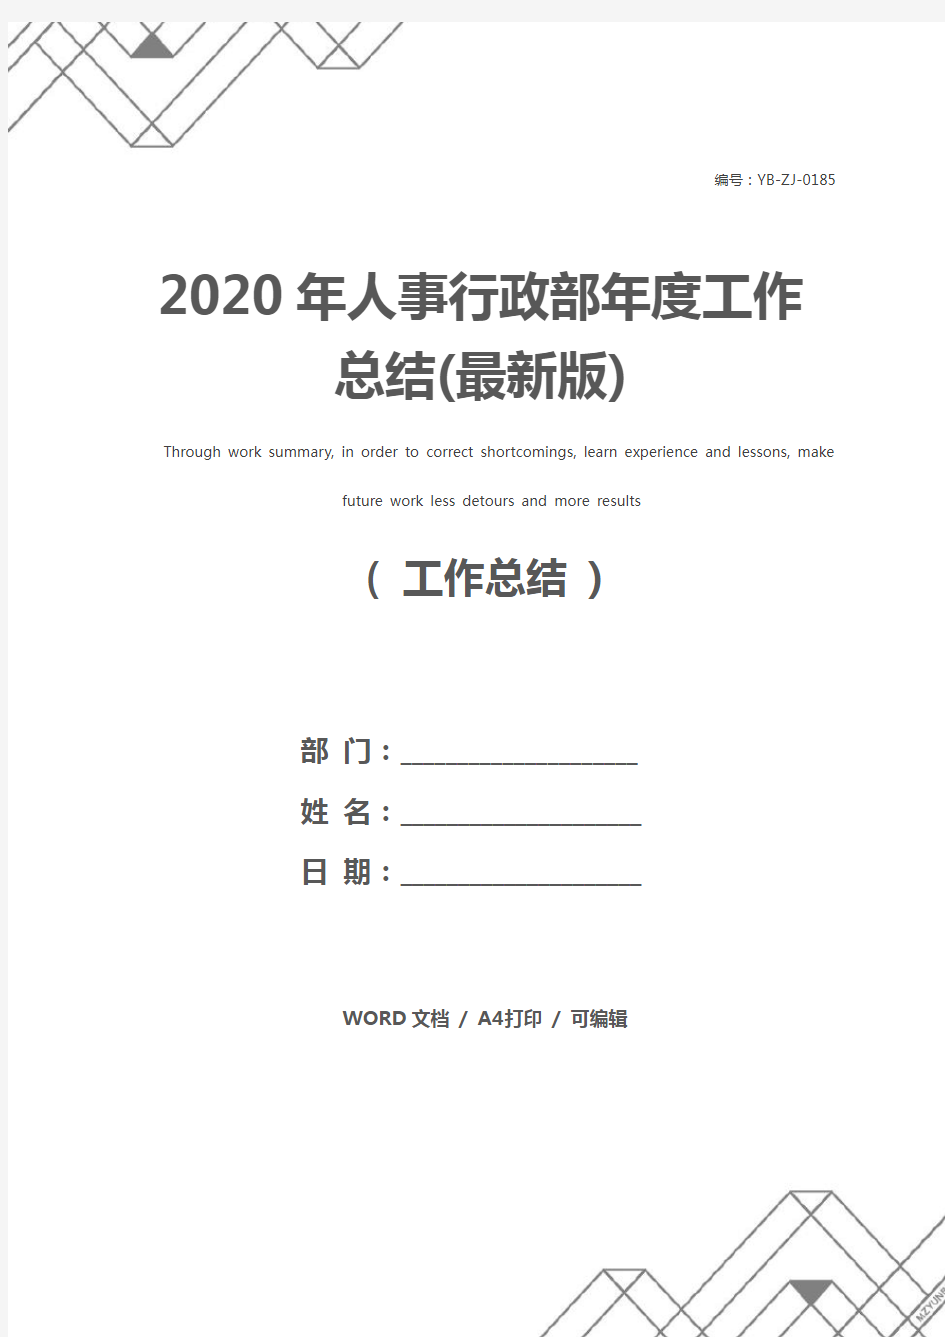 2020年人事行政部年度工作总结(最新版)